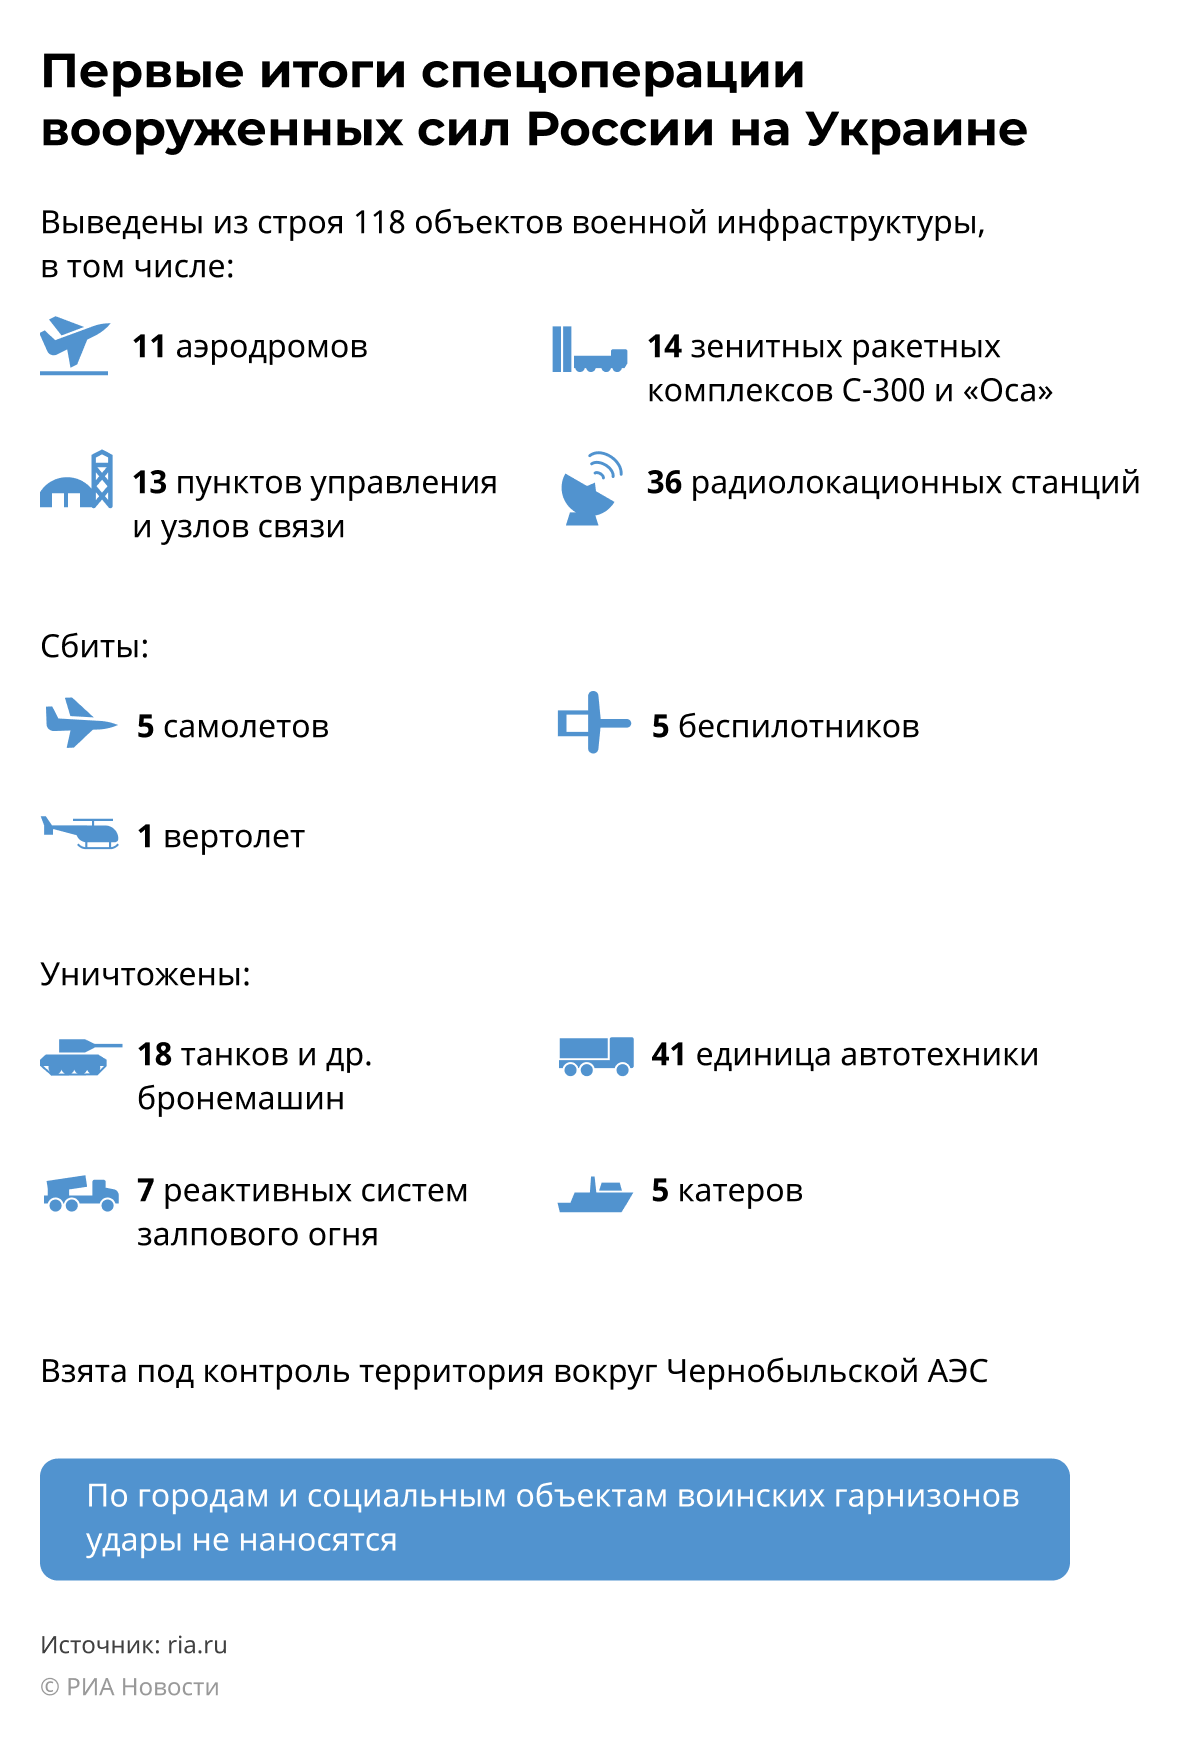 Первые итоги спецоперации вооруженных сил России на Украине